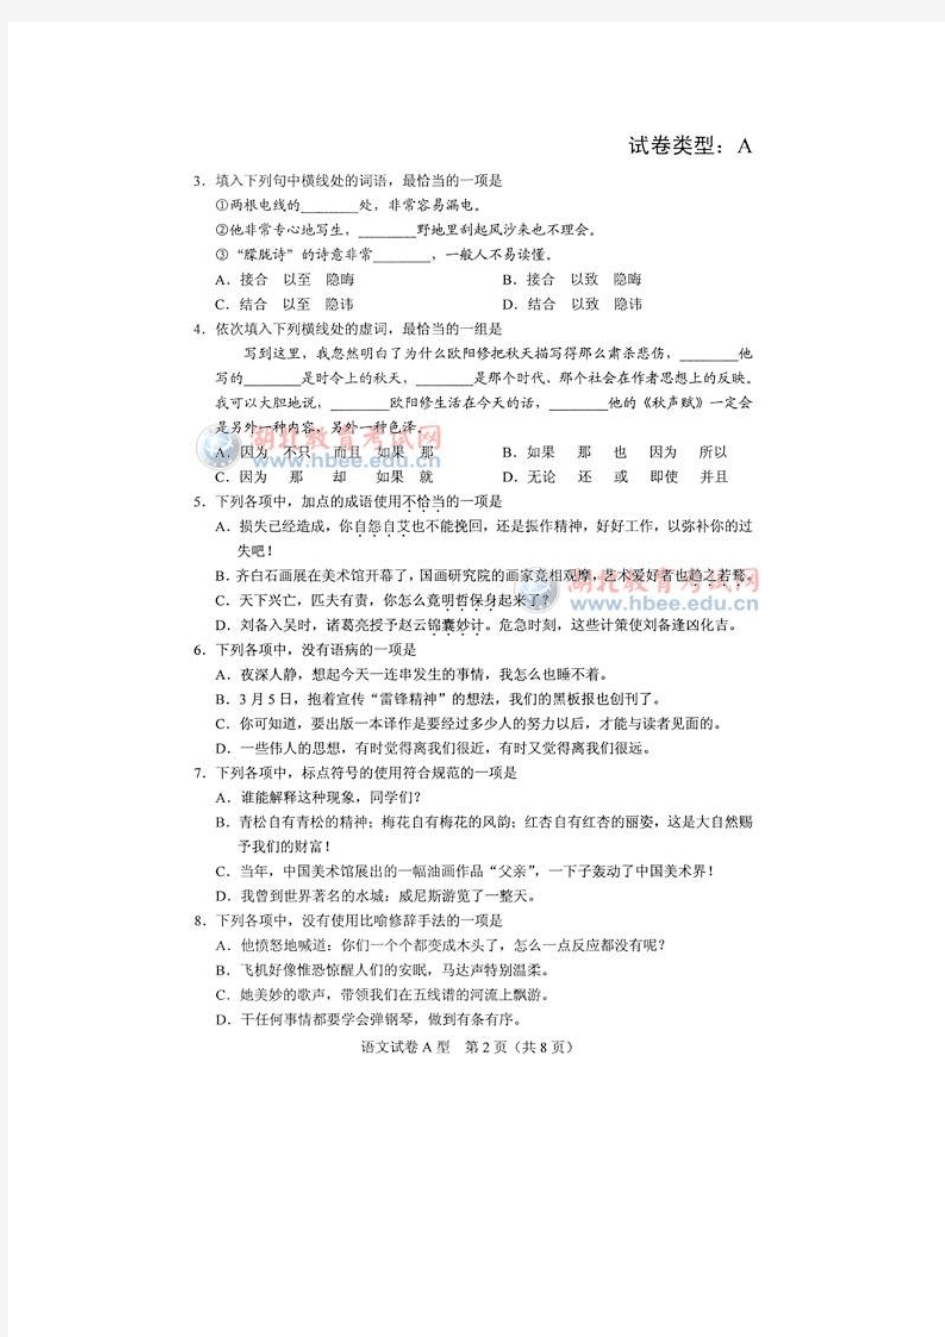 湖北省2012年高职统考语文试卷及答案